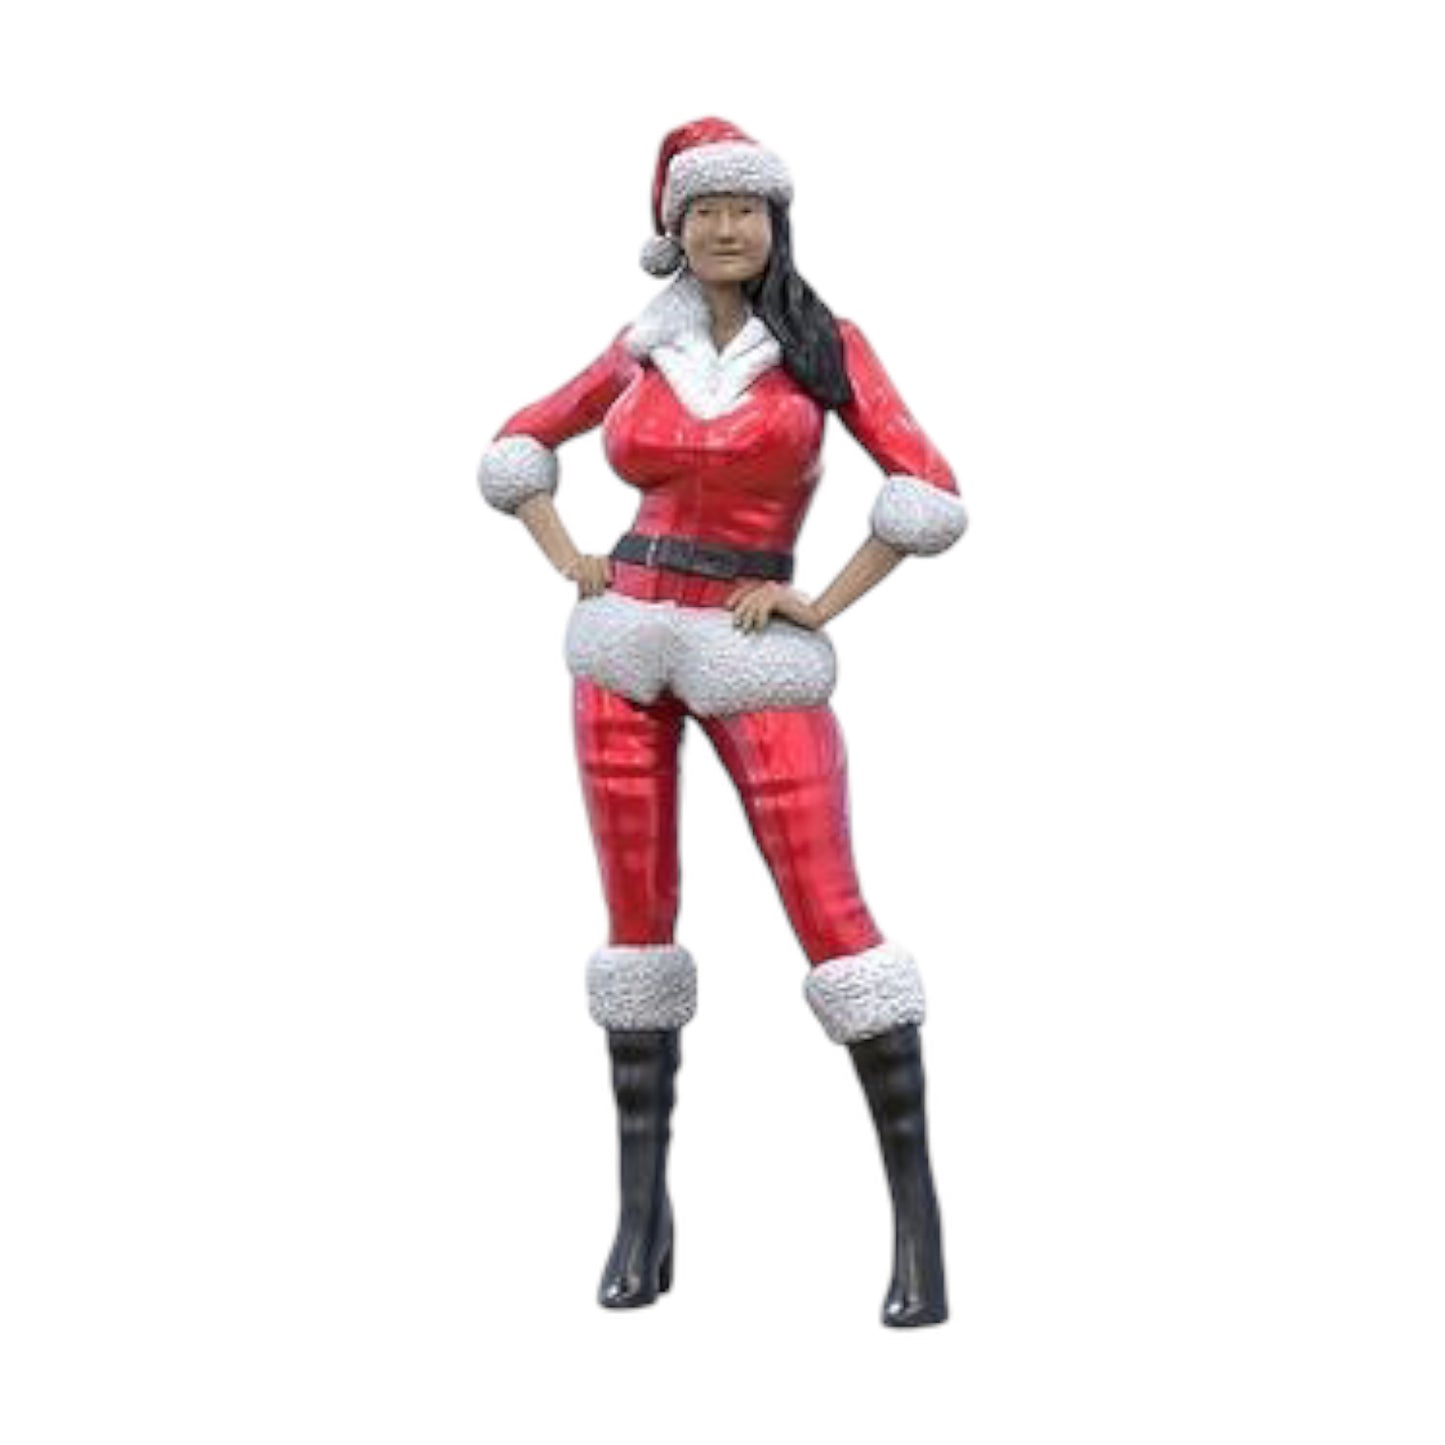 Produktfoto  0: Weihnachtsfrau: Weibliche Santa Claus an Weihnachten